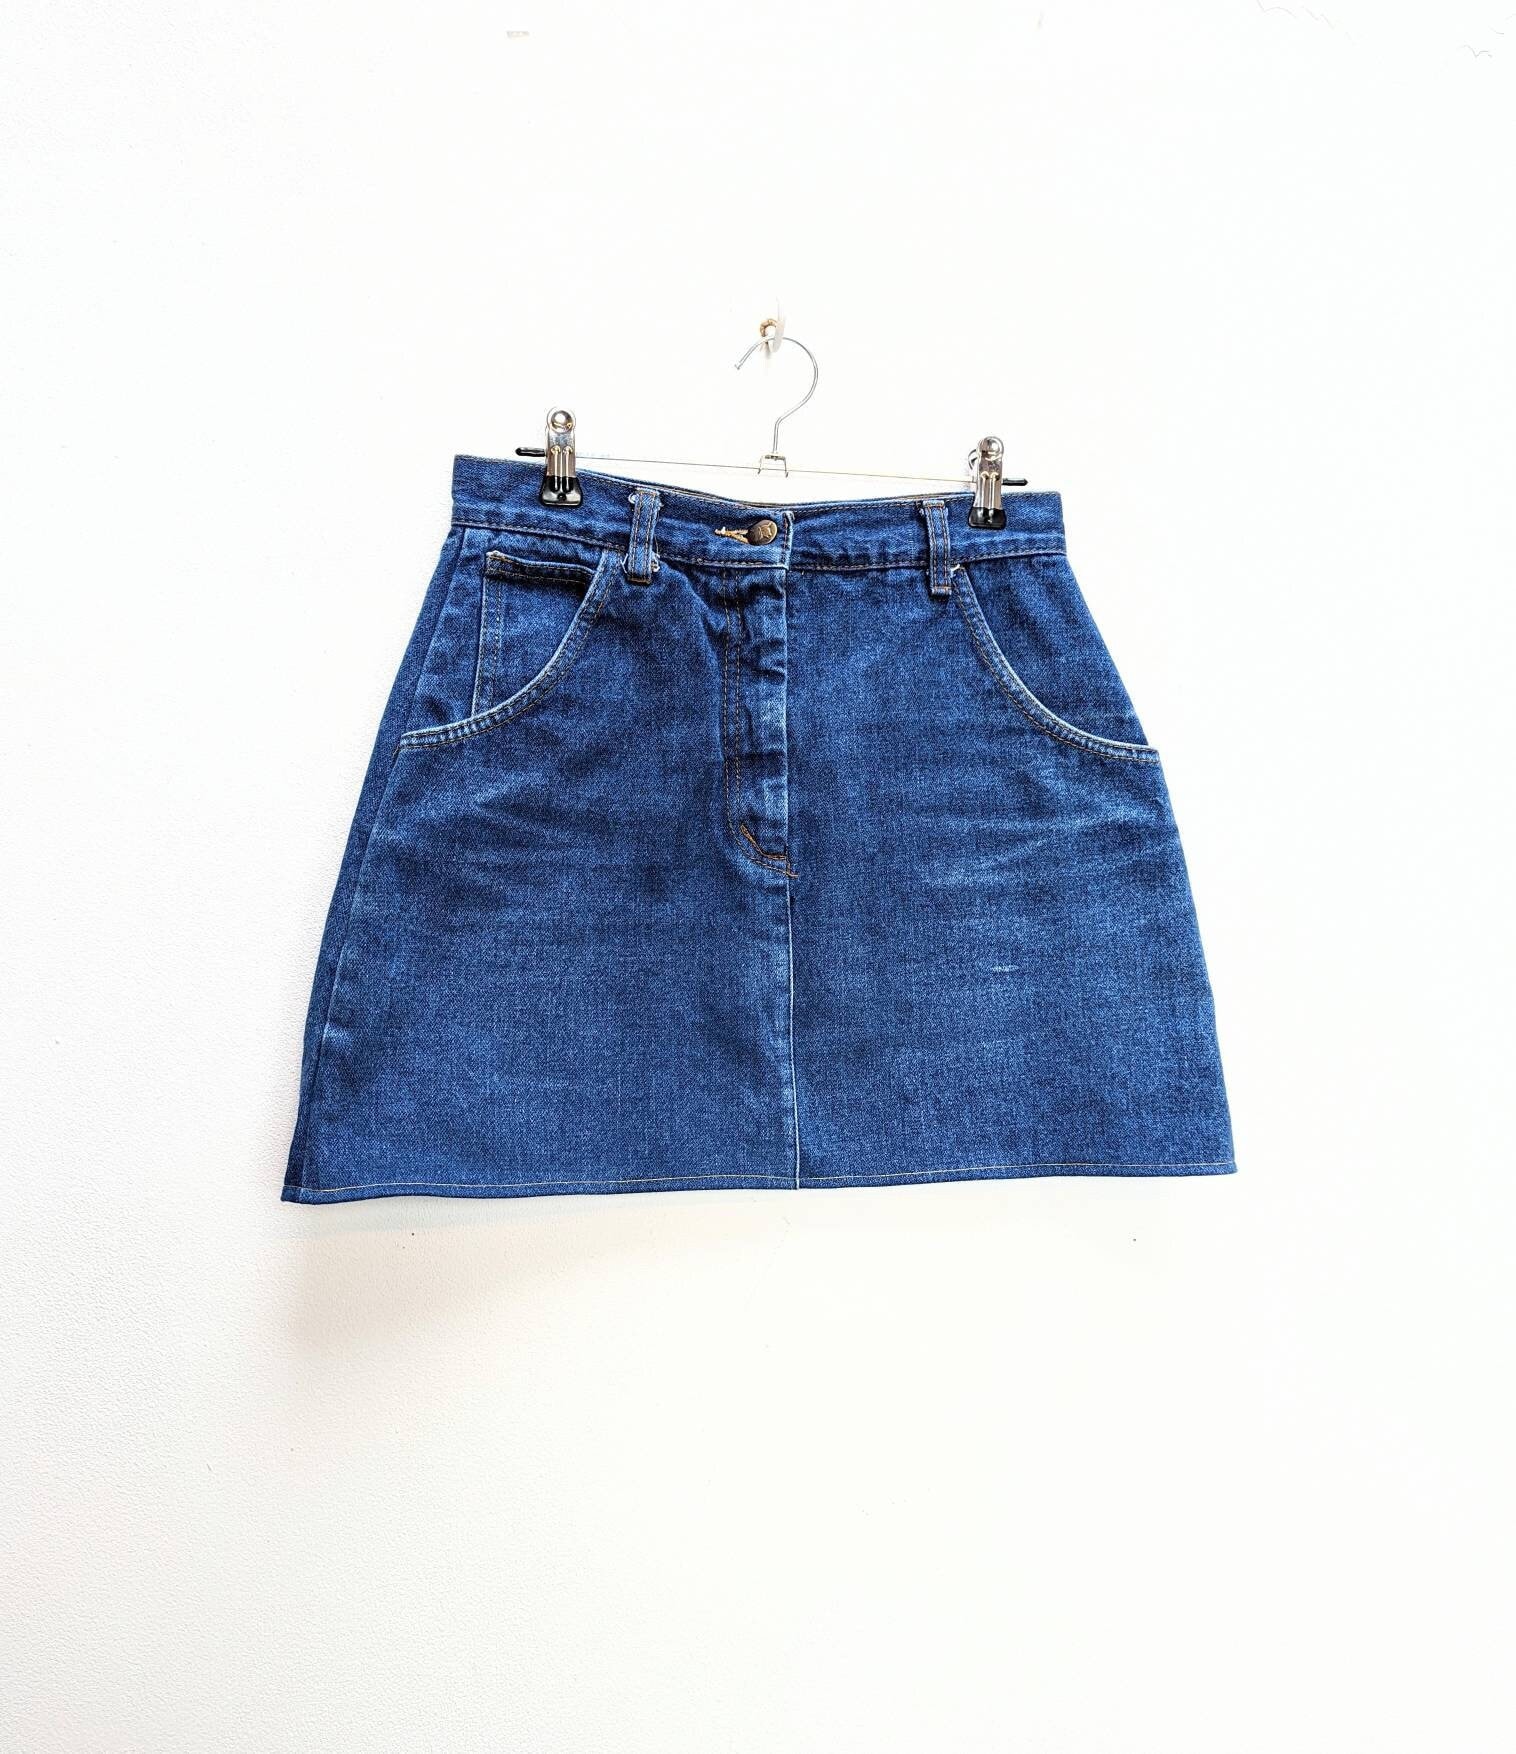 Blauer Jeans Minirock Vintage Jeansrock Kleiner Hoch Tailliert Damen Rock von MarmaladeVintageCo